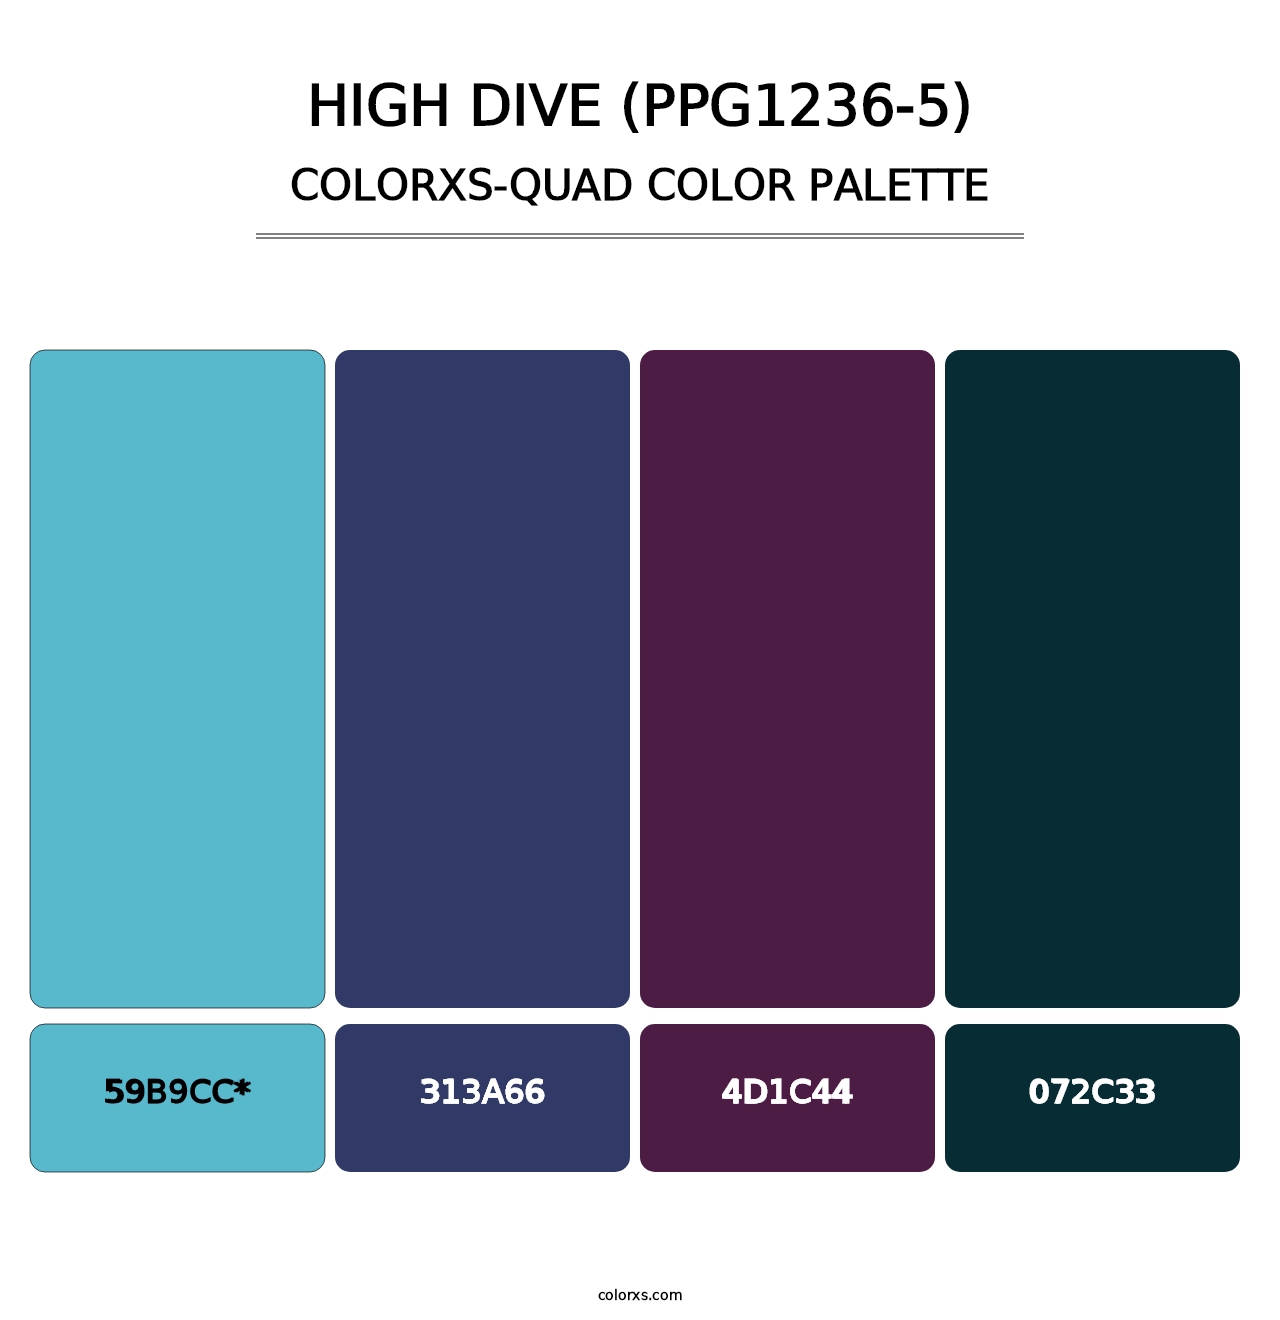 High Dive (PPG1236-5) - Colorxs Quad Palette